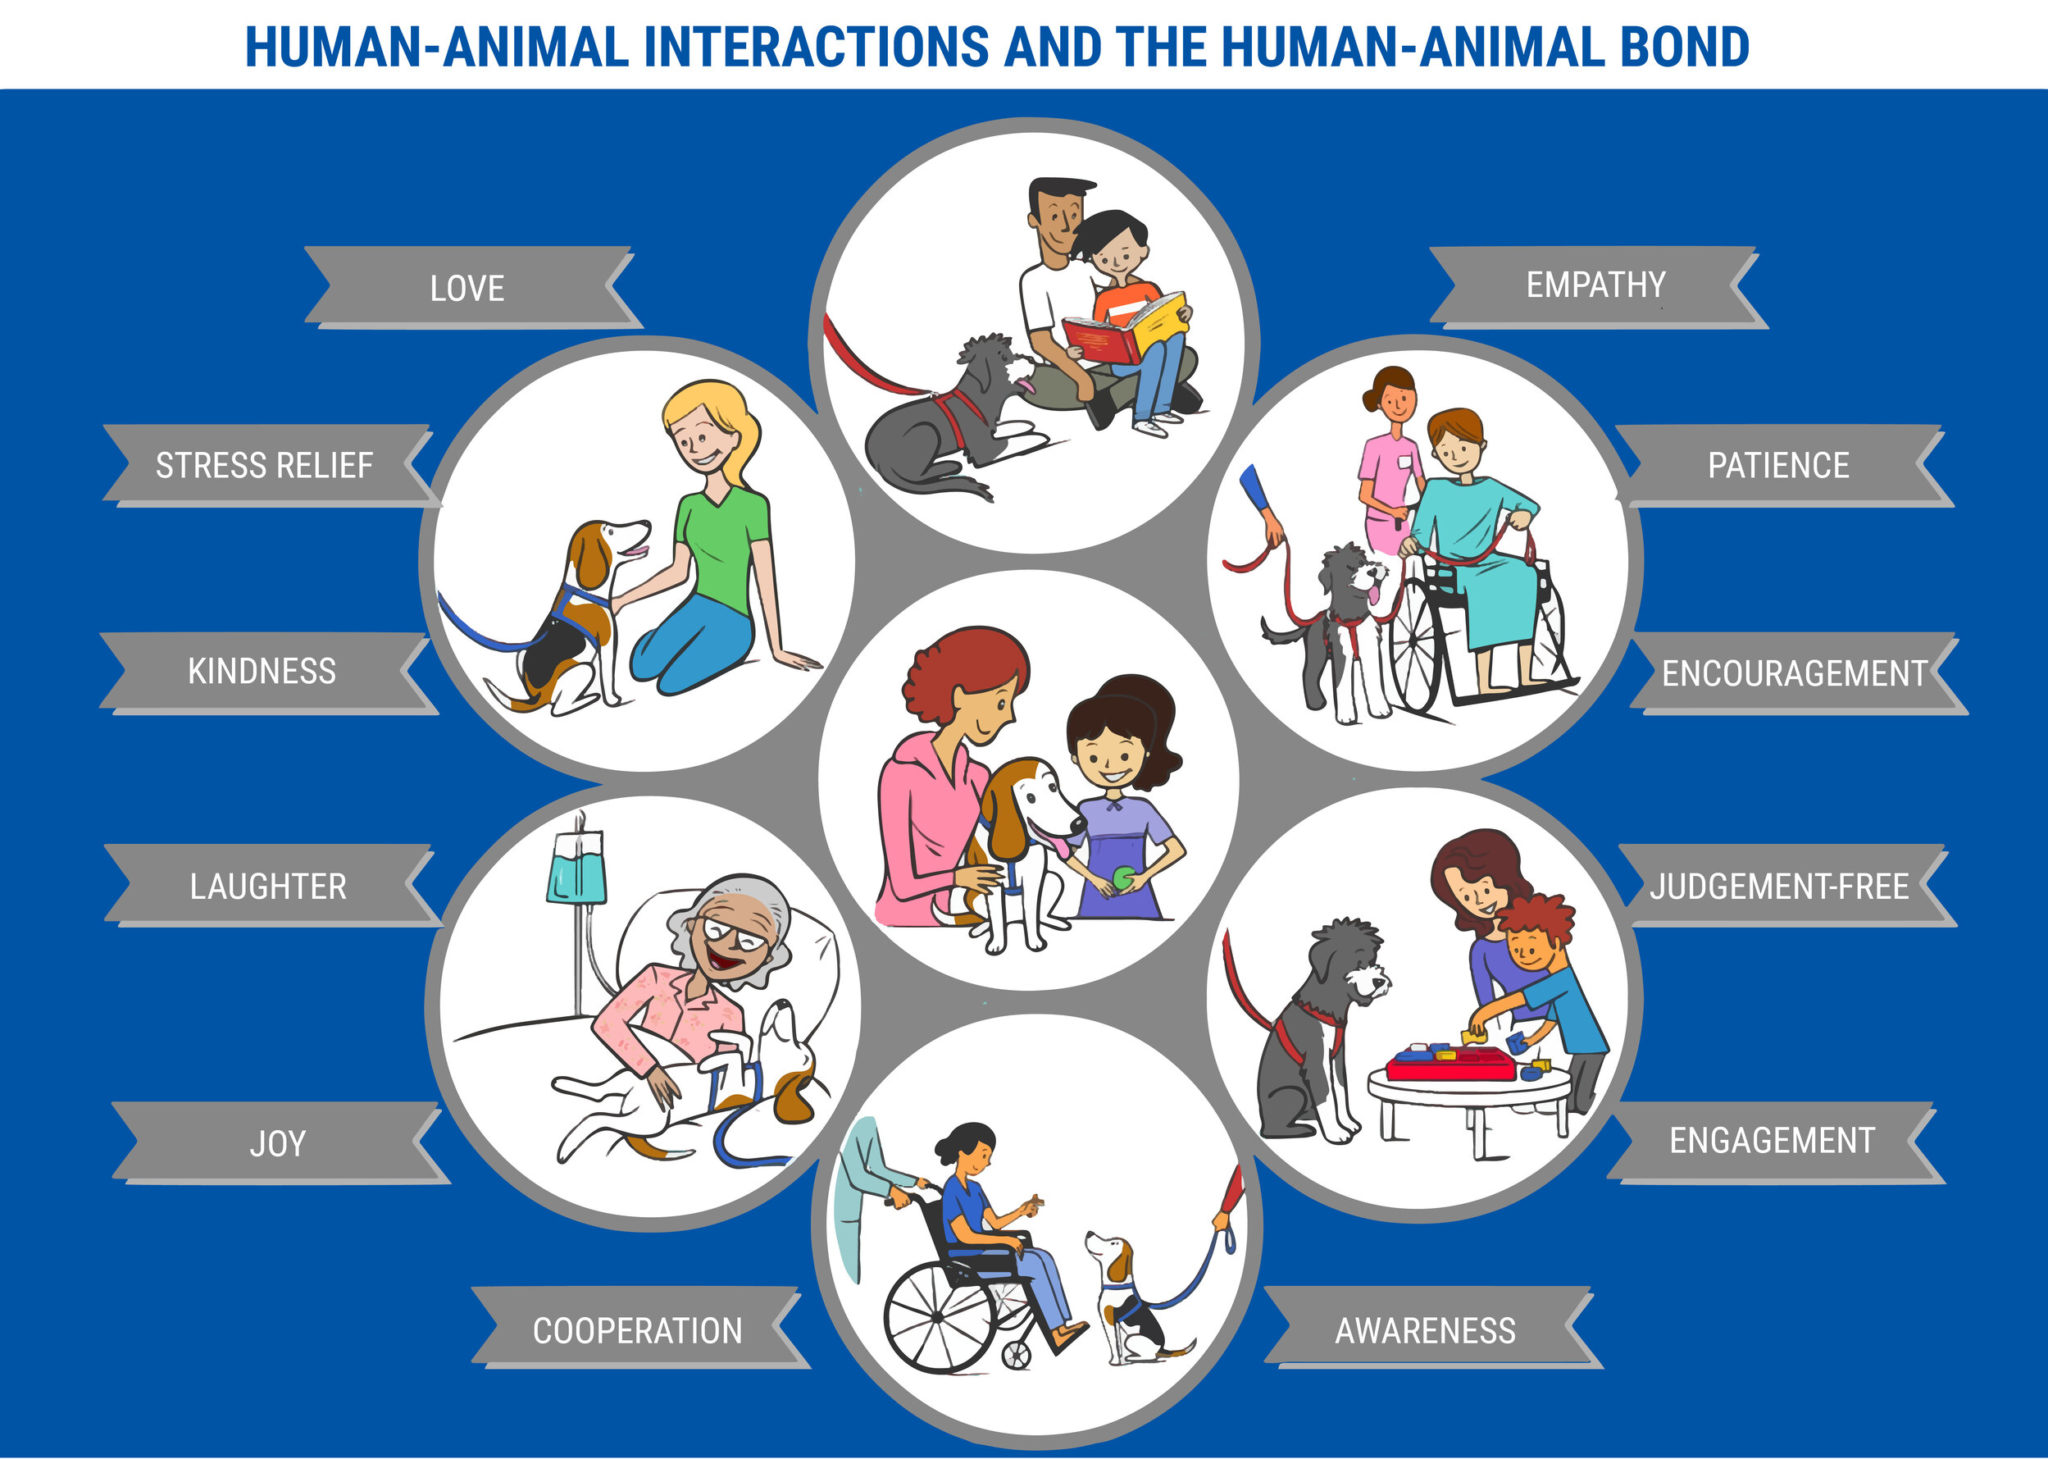 HUMAN-ANIMAL INTERACTIONS AND THE HUMAN-ANIMAL BOND